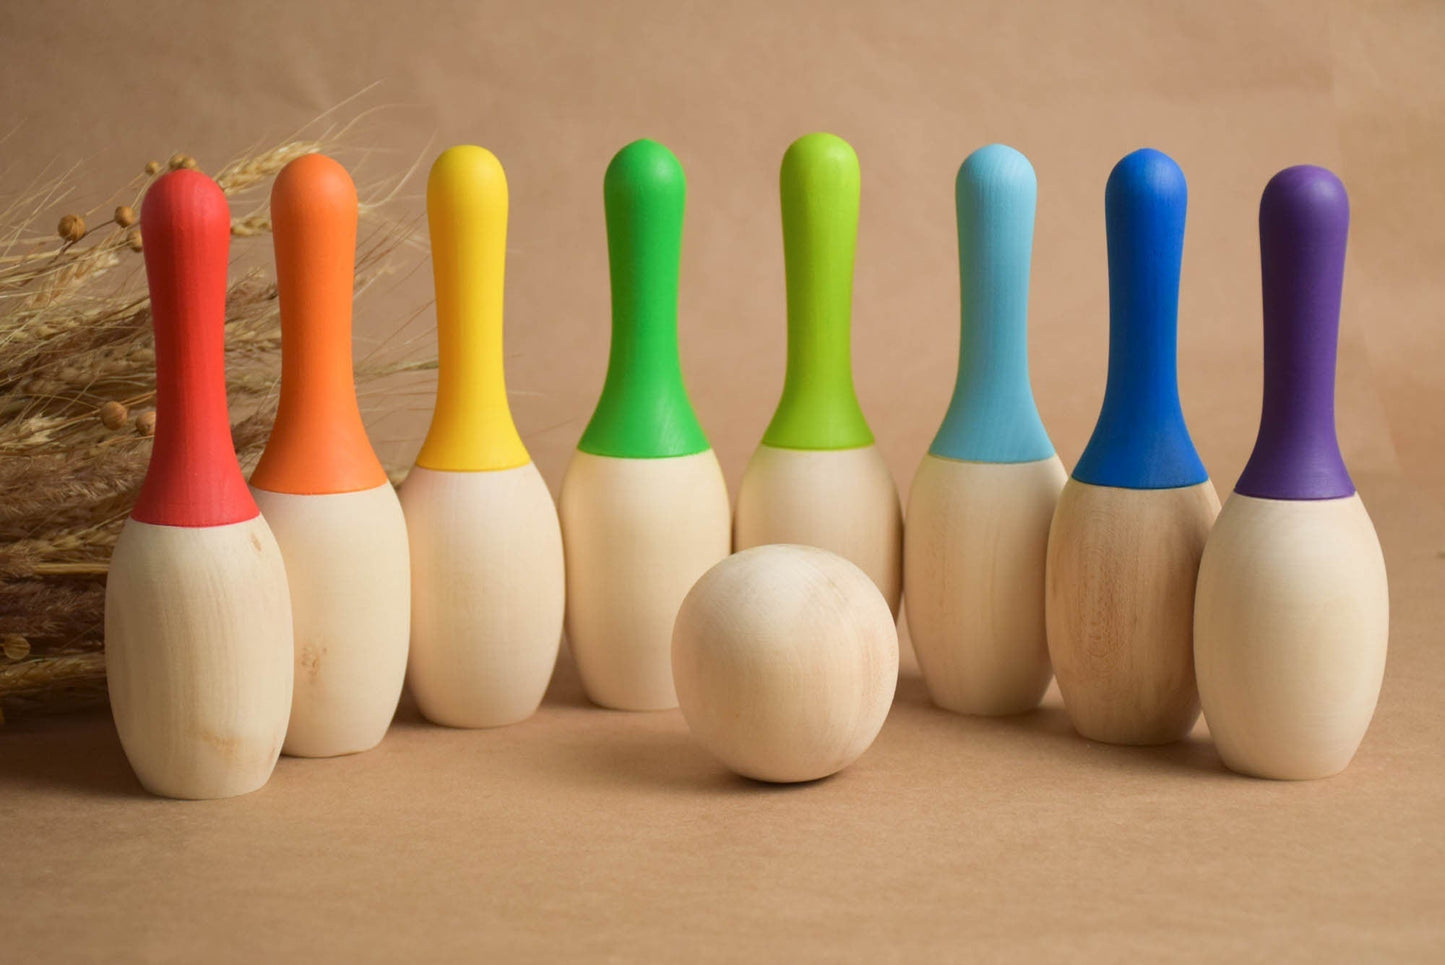 Mini-Holz-Bowlingspiel mit Pins, Bowling-Kindersets, Holzspielzeug für Kleinkinder, Lernspielzeug, Partyspiele, Babygeschenk zum ersten Geburtstag